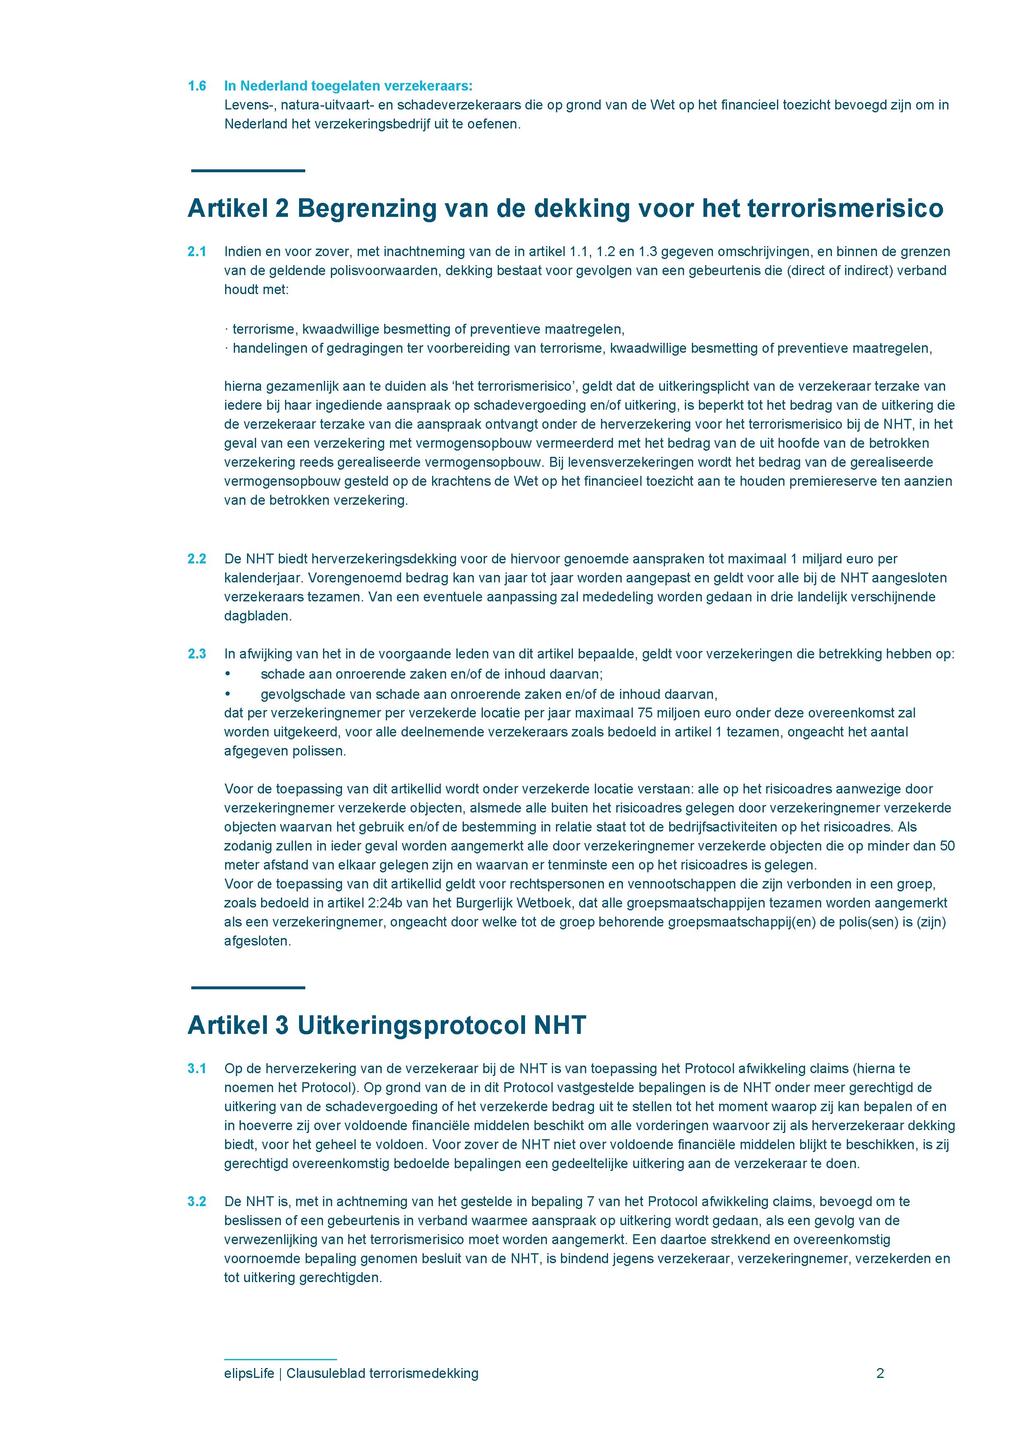 1.6 In Nederland toegelaten verzekeraars: Levens-, natura-uitvaart- en schadeverzekeraars die op grond van de Wet op het financieel toezicht bevoegd zijn om in Nederland het verzekeringsbedrijf uit